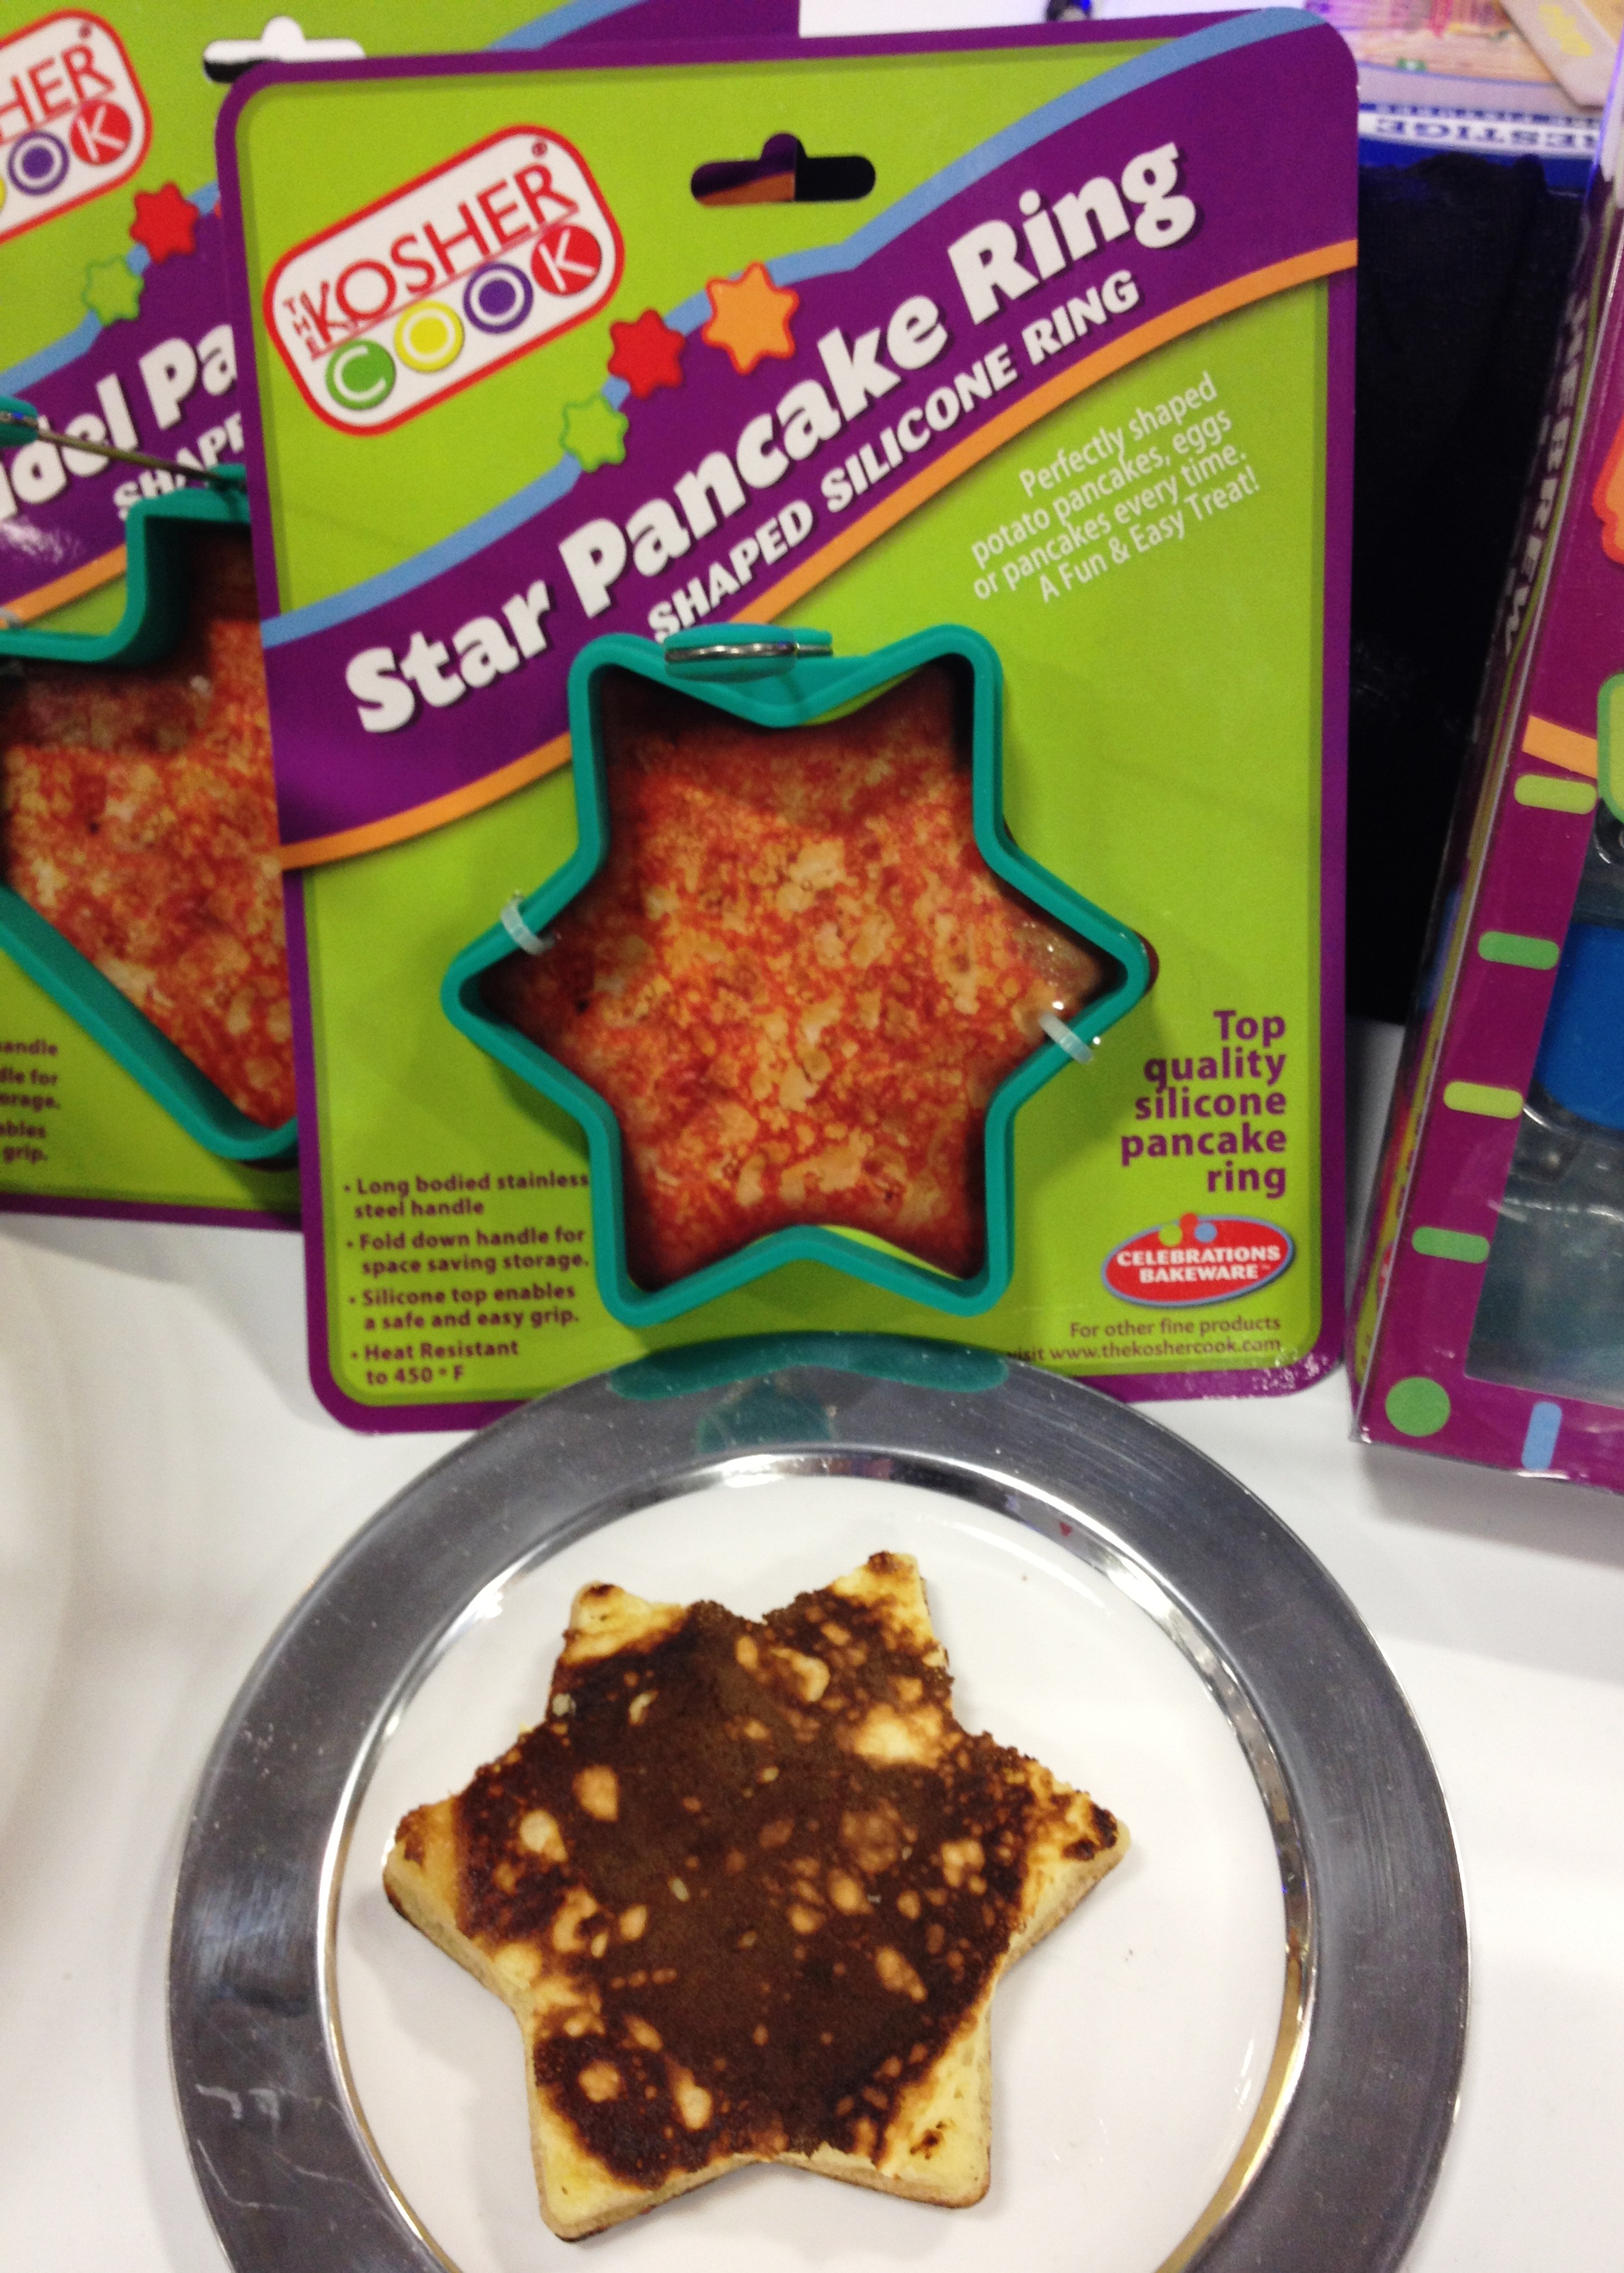 The Kosher Cook star pancake ring.JPG